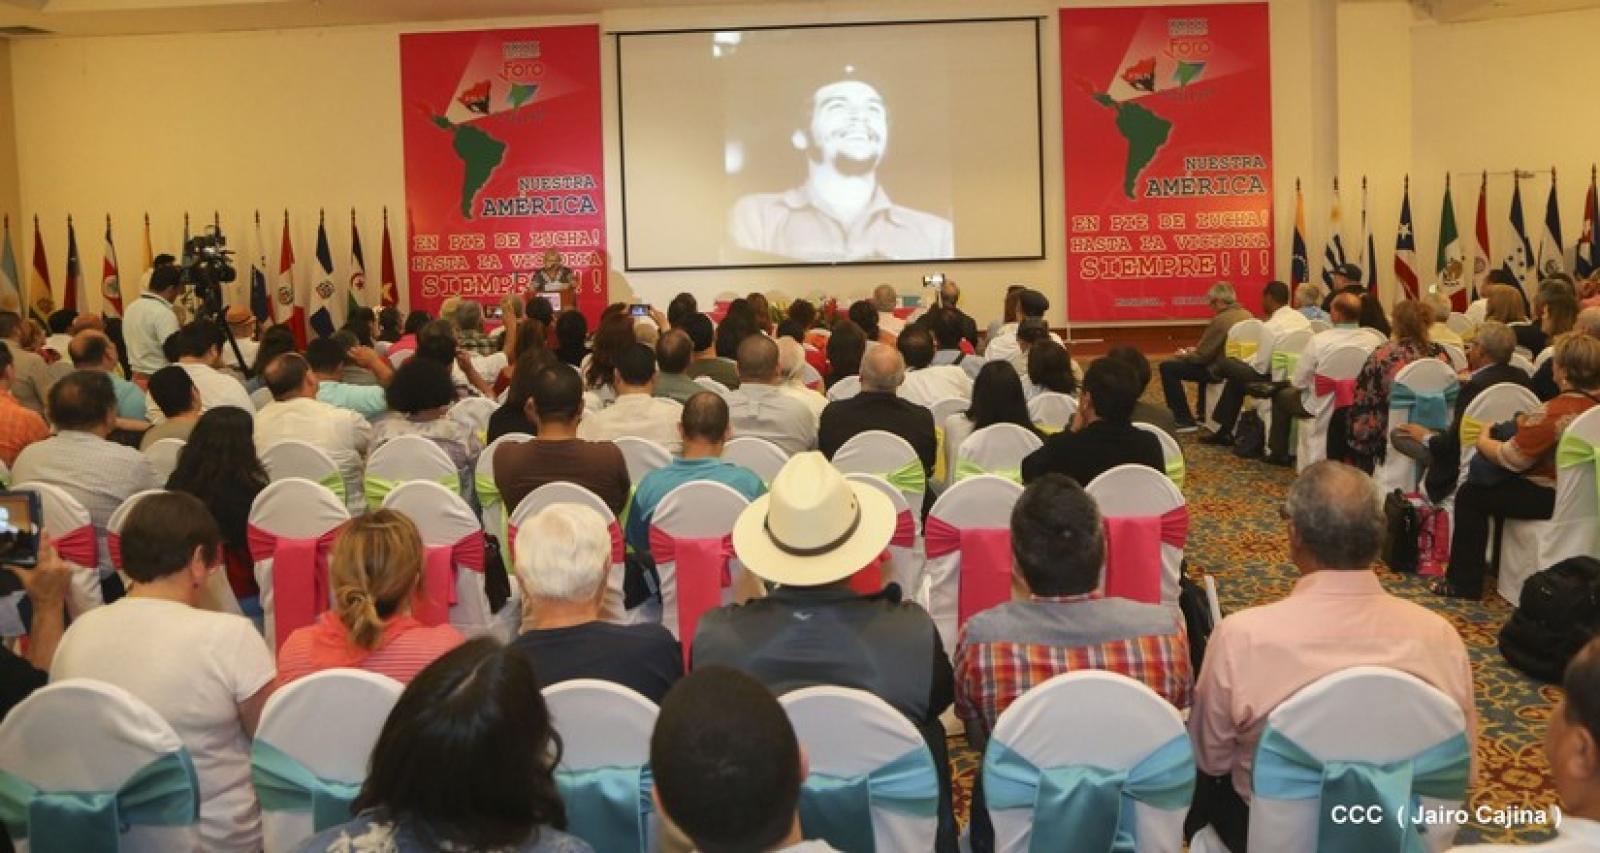 Homenaje al Che, Fidel y Chavez en el Foro de Sao Paulo